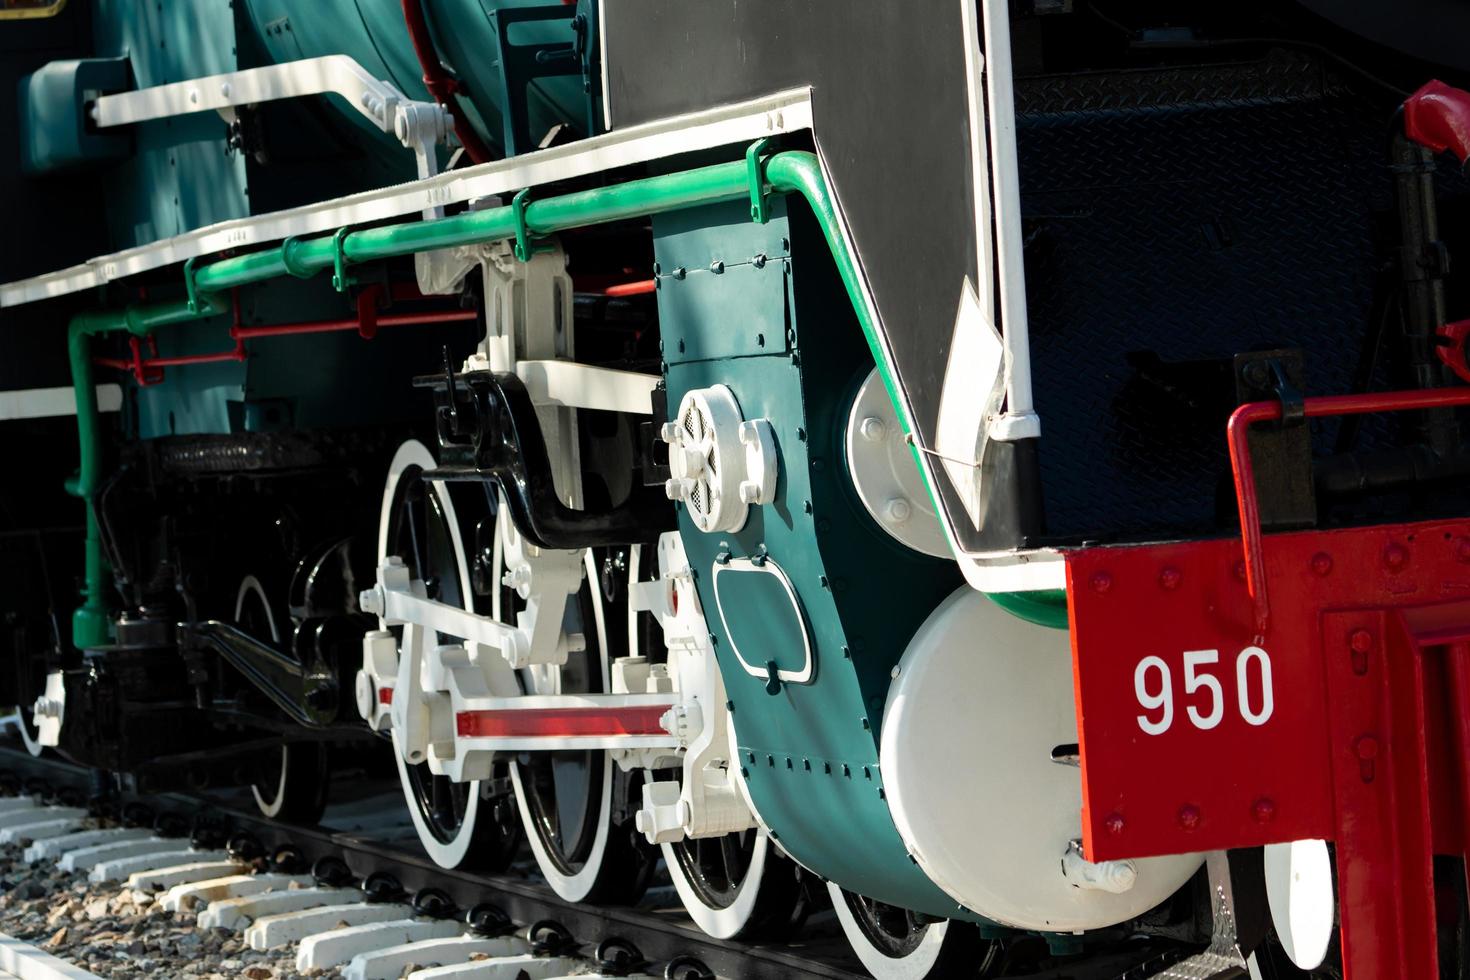 closeup roda de trem. trem vermelho e branco verde. locomotiva de trem vintage antiga. velha locomotiva a vapor. locomotiva preta. veículo de transporte antigo. indústria de transporte ferroviário. foto